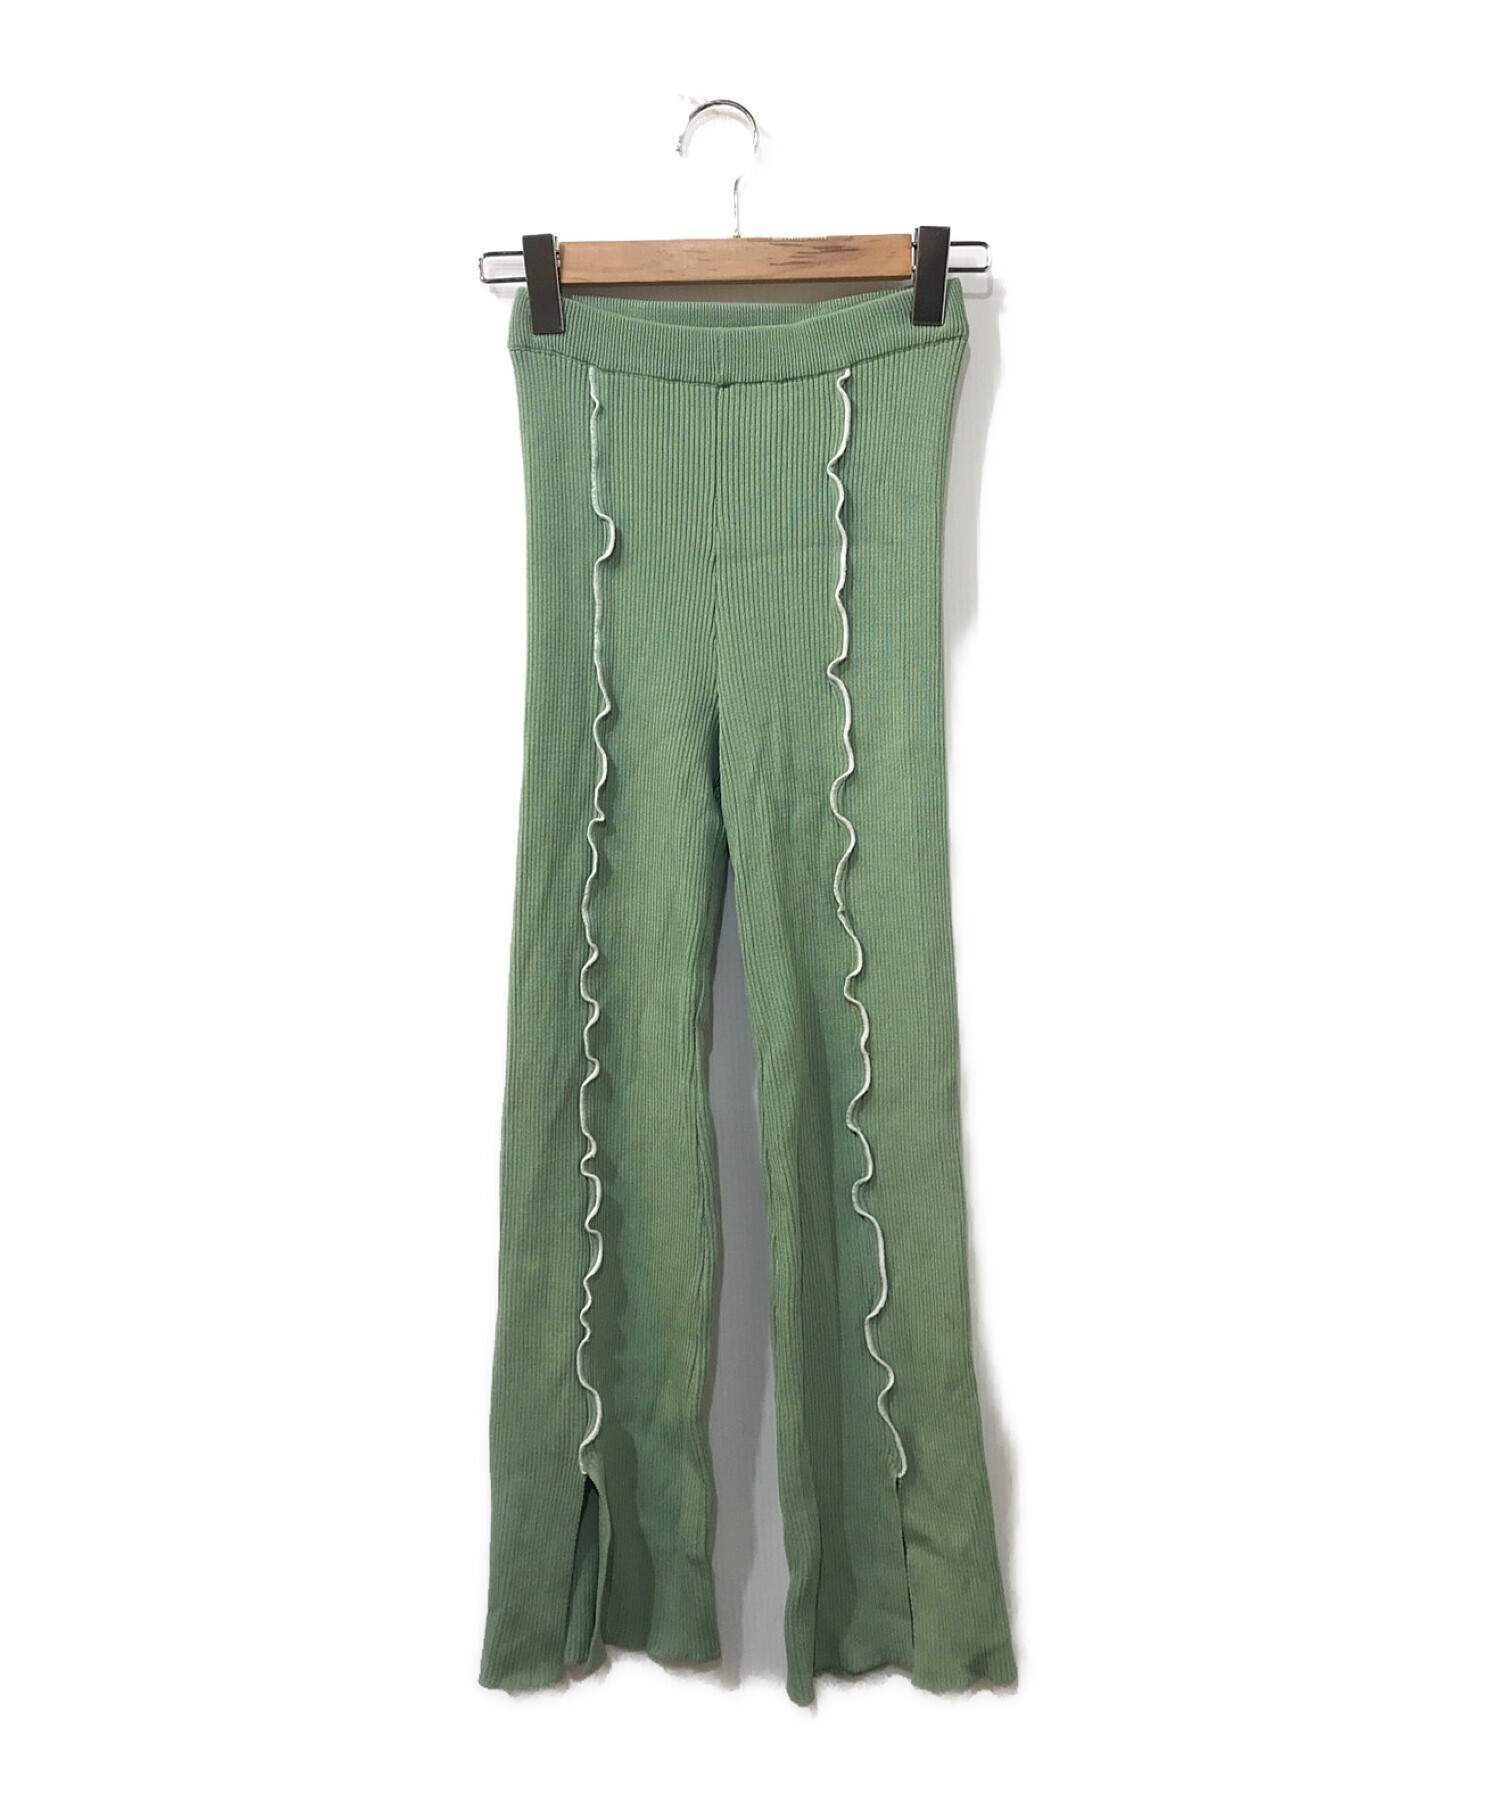 スドーク sodukリボンパンツ ribbon trousers 緑 Green - カジュアルパンツ